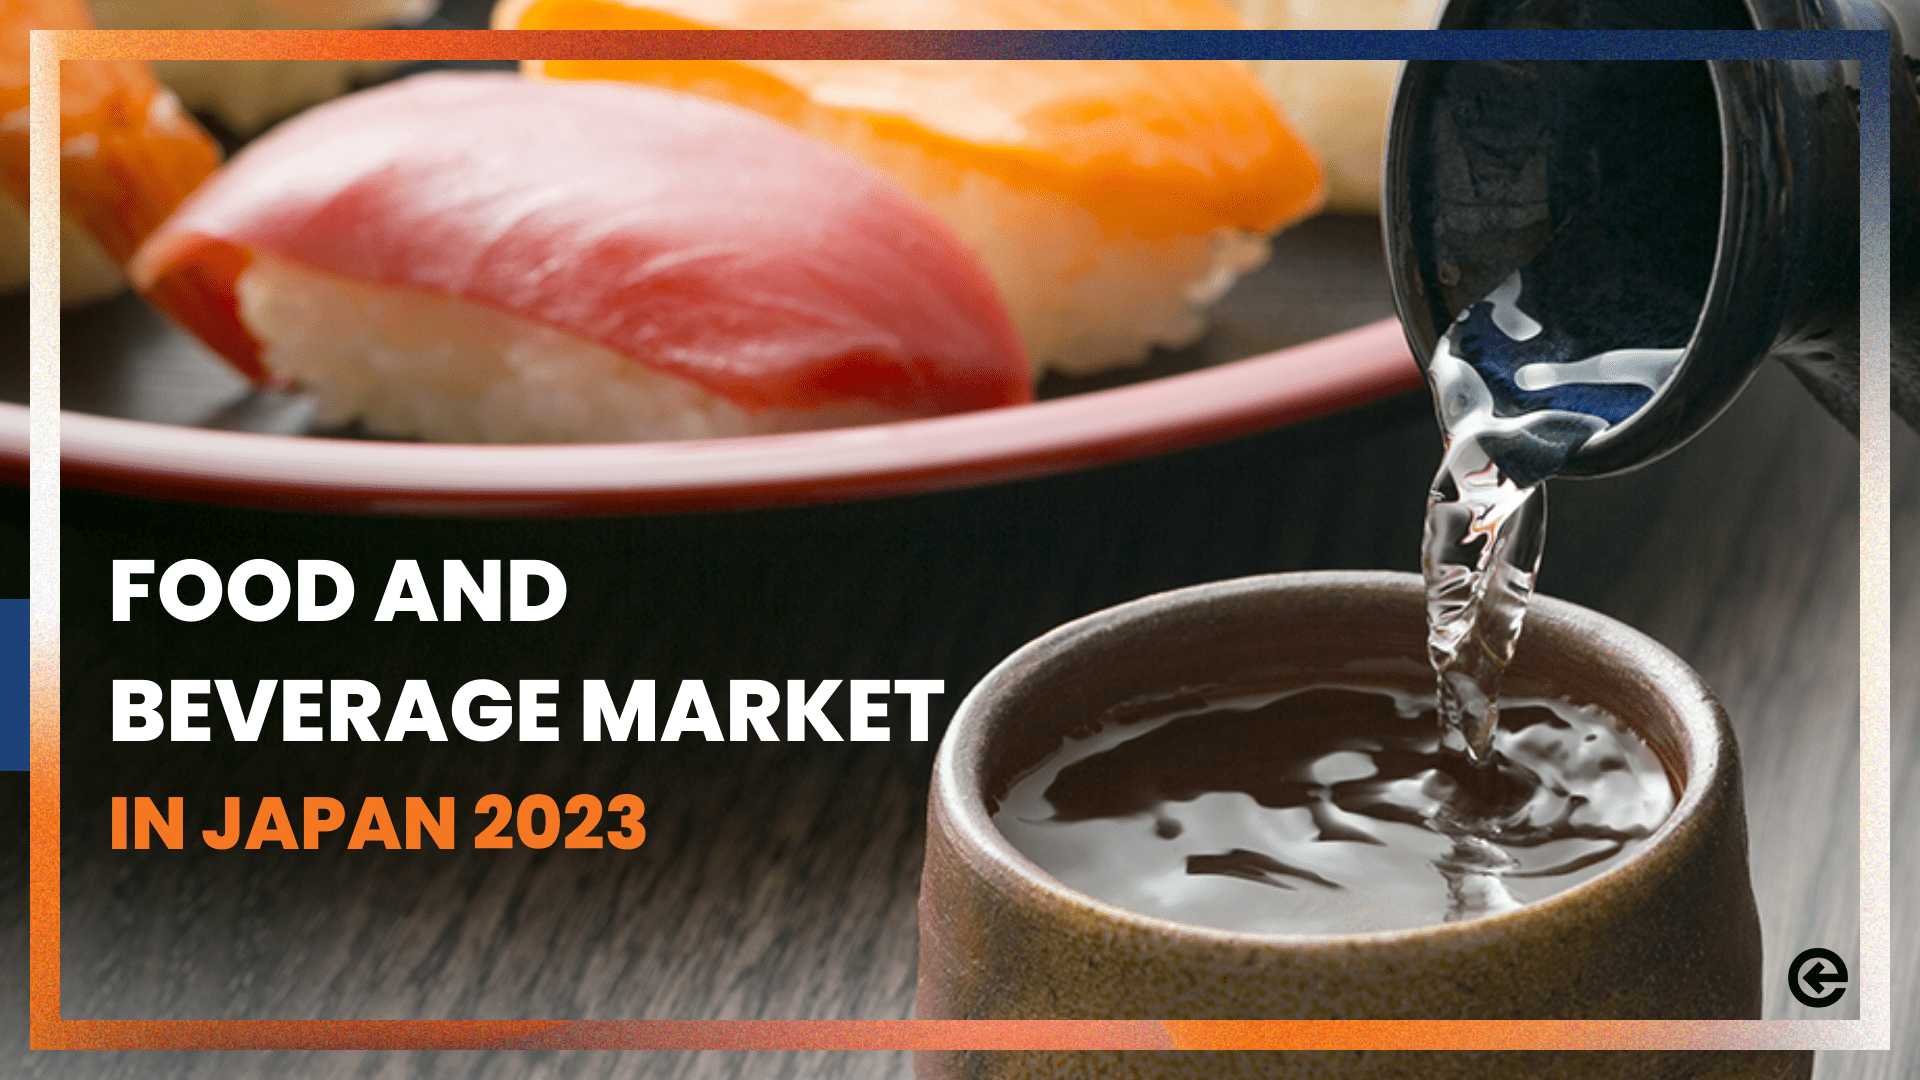 2023년 일본 식음료 시장은 어떤 트렌드를 보일까요?